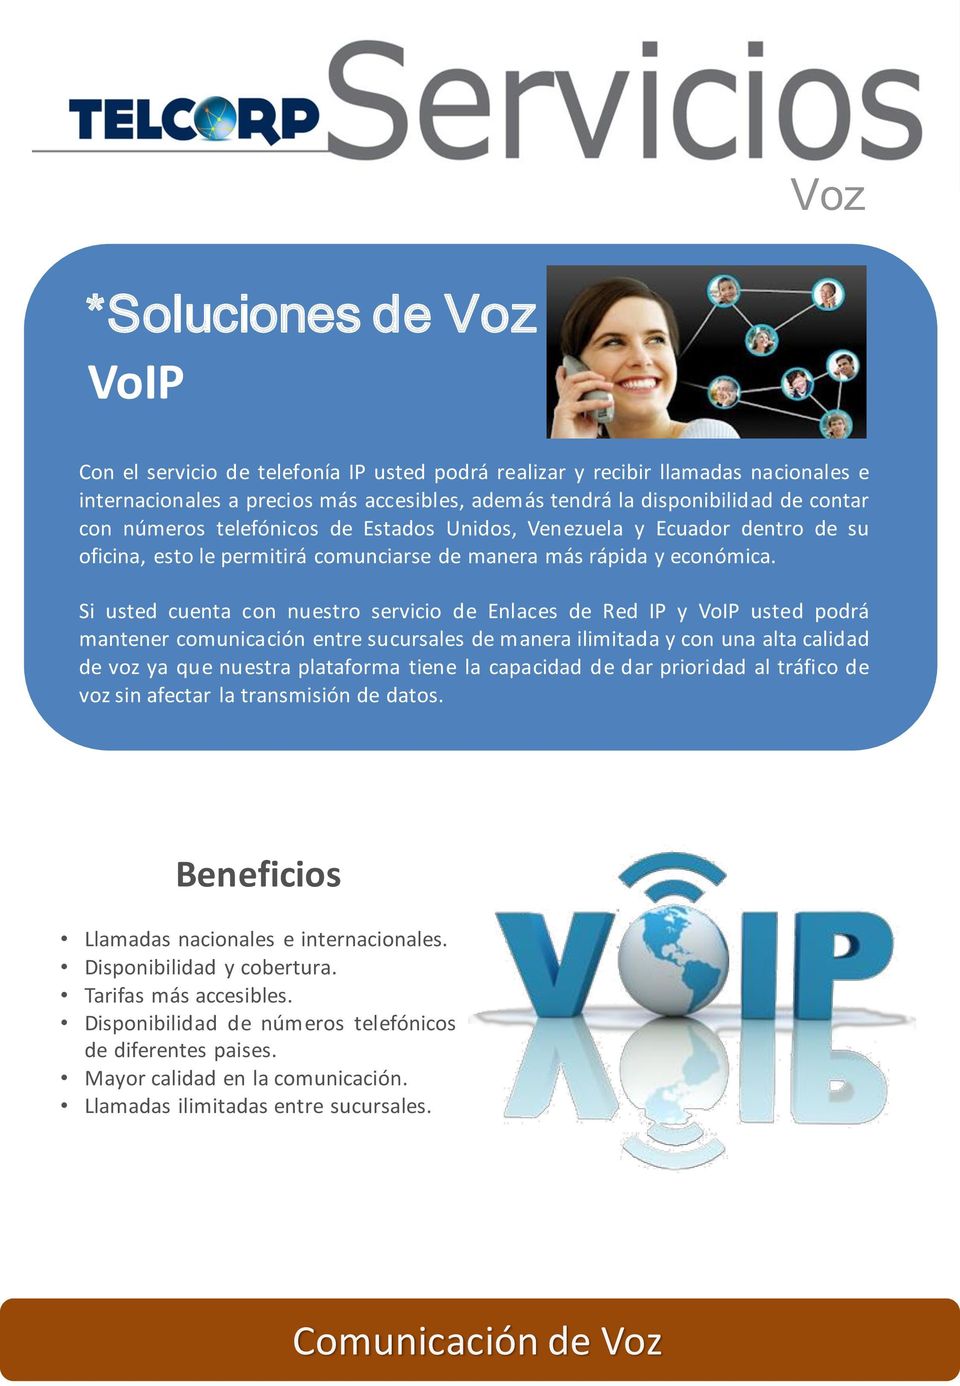 Si usted cuenta con nuestro servicio de Enlaces de Red IP y VoIP usted podrá mantener comunicación entre sucursales demanera ilimitada y con una alta calidad de voz ya que nuestra plataforma tiene la